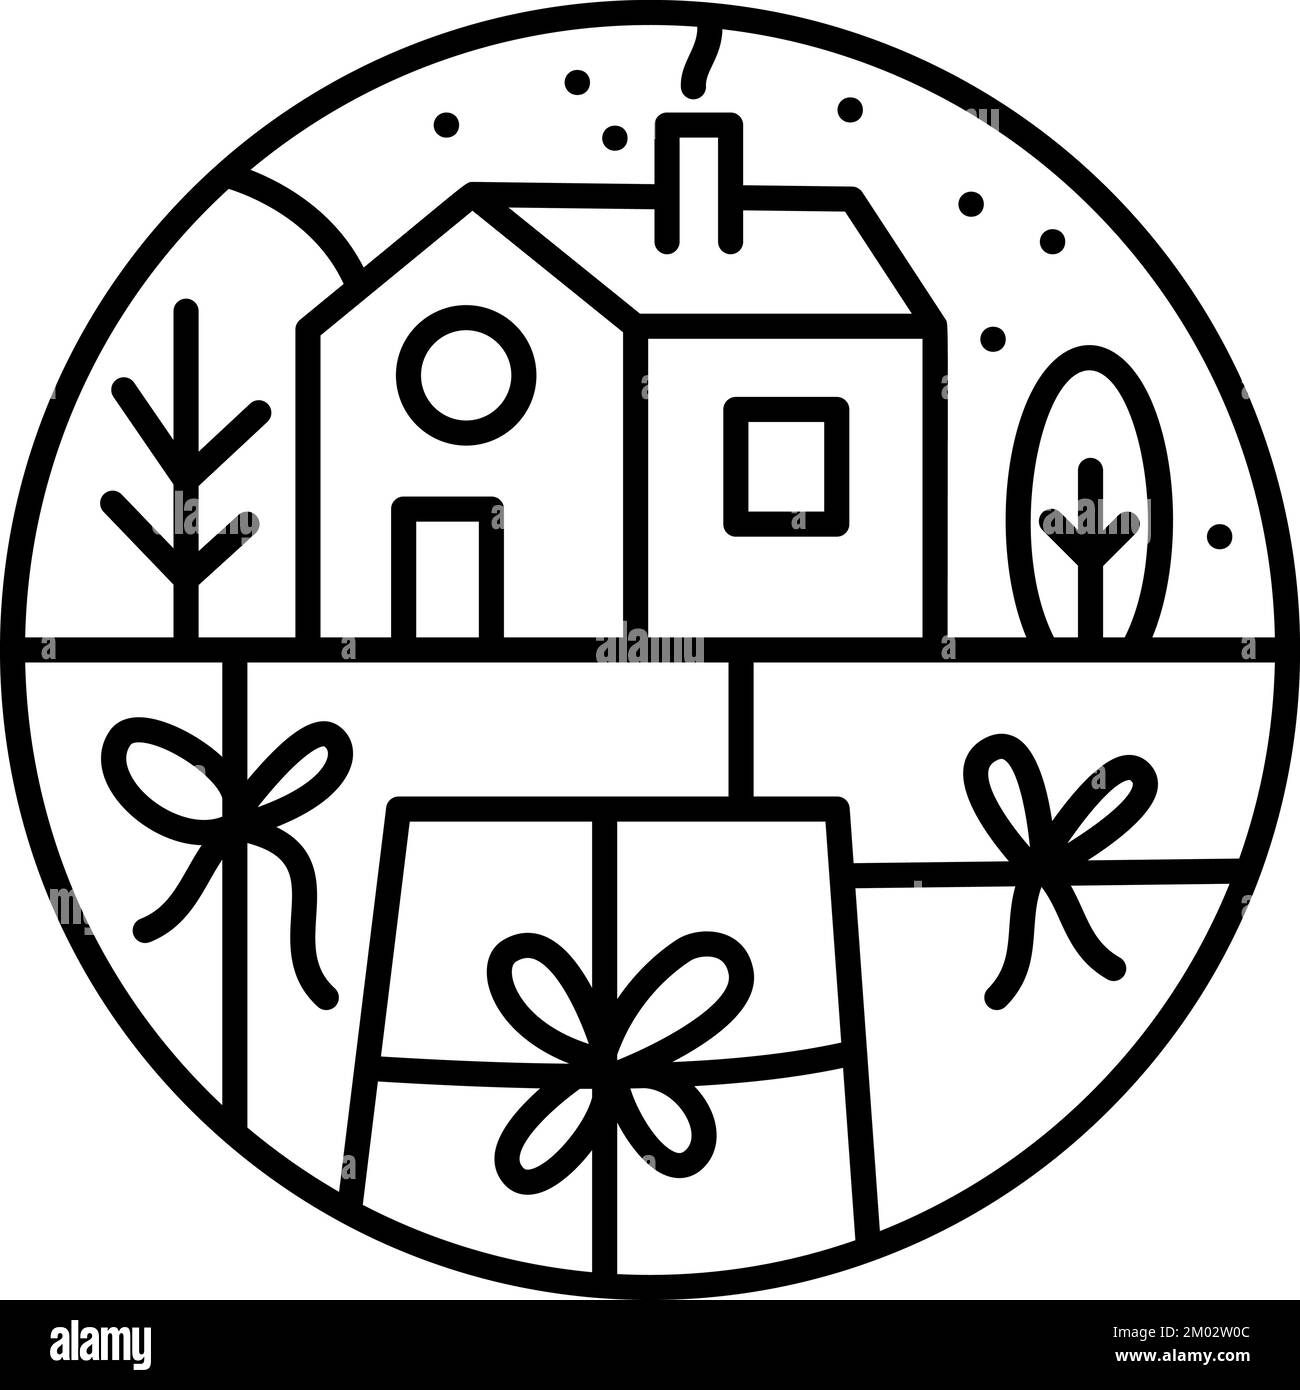 Navidad logotipo de adviento composición casa y cajas de regalo. Monoline constructor vector de invierno dibujado a mano en dos marcos semirredondos para tarjeta de felicitación Ilustración del Vector